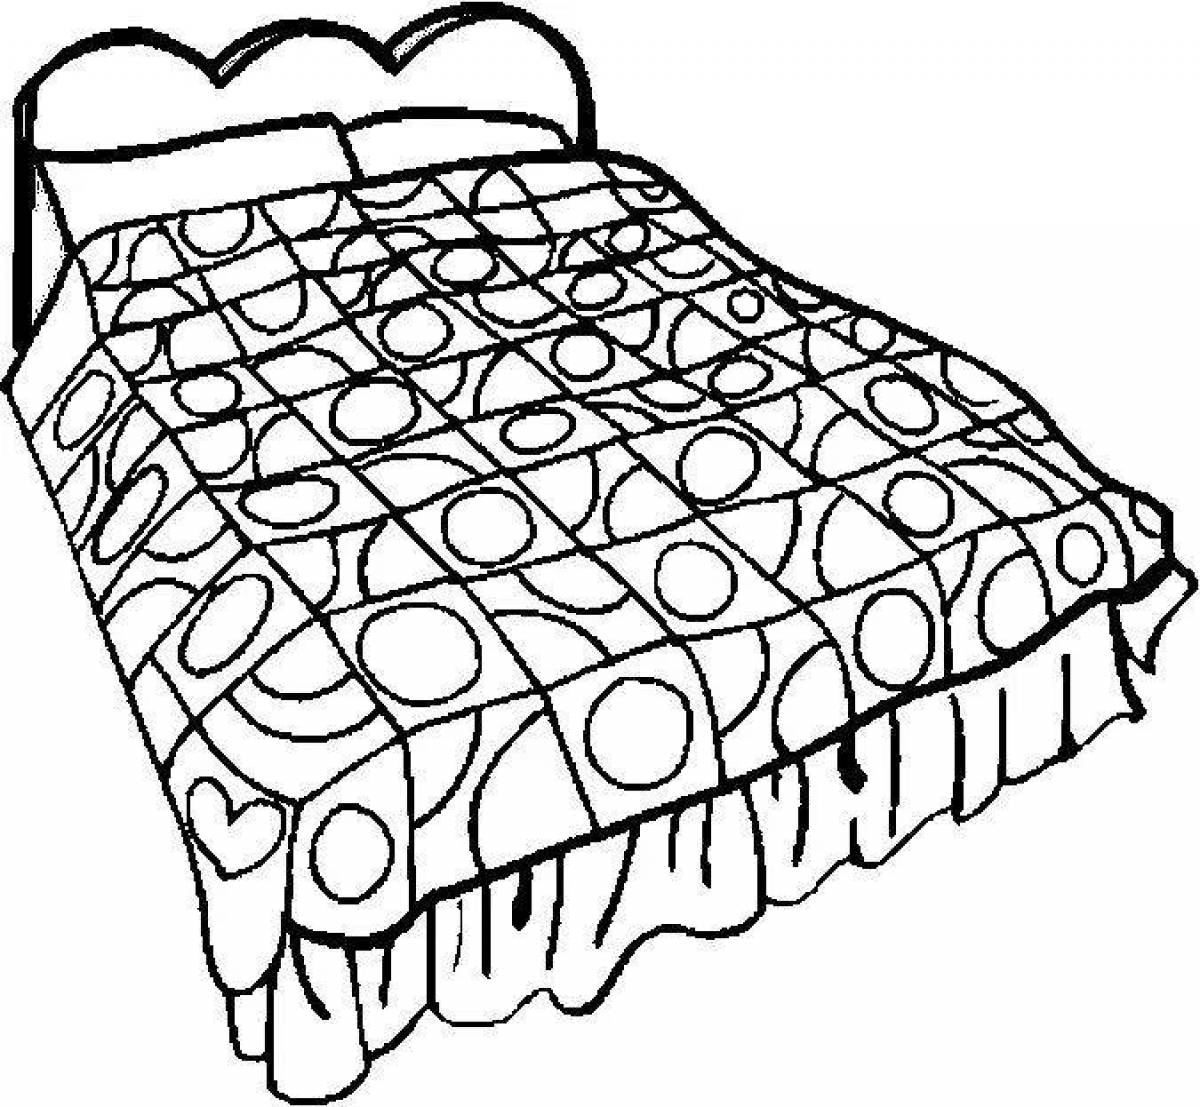 Кровать для раскрашивания